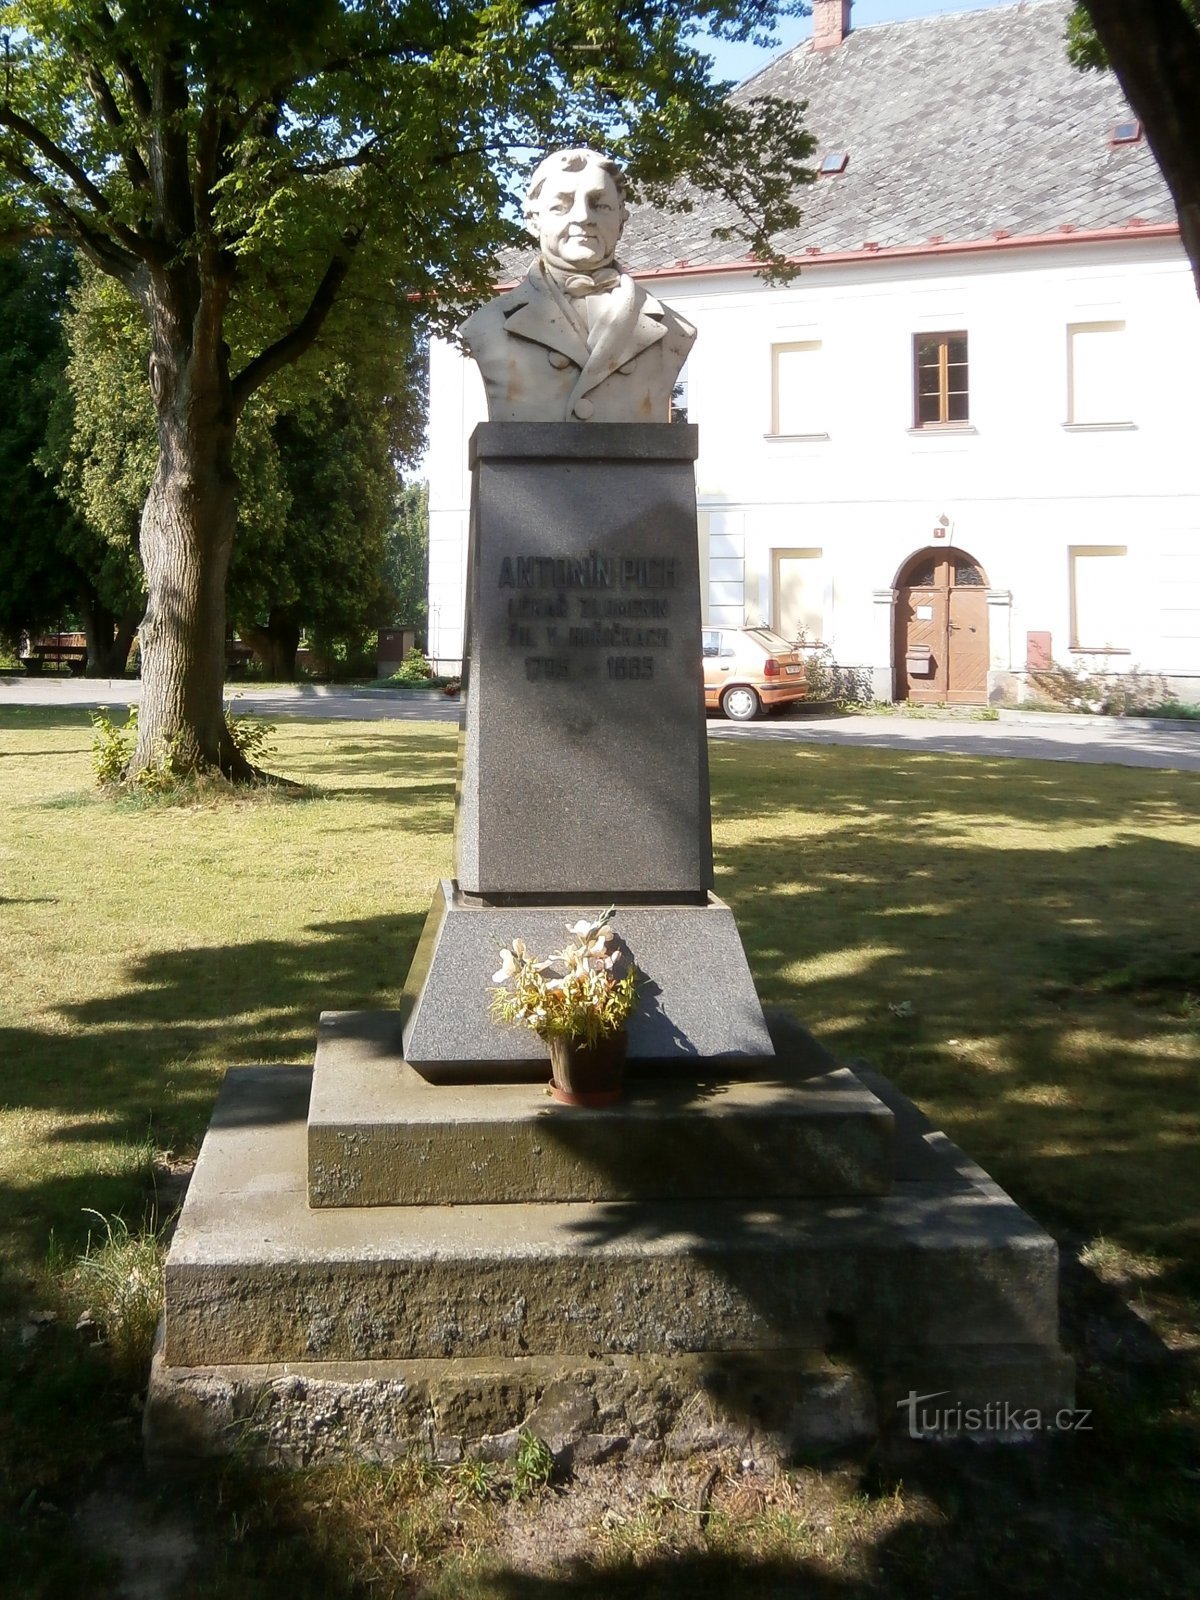 Antonín Picha 纪念碑（Hořičky，5.7.2017 年 XNUMX 月 XNUMX 日）